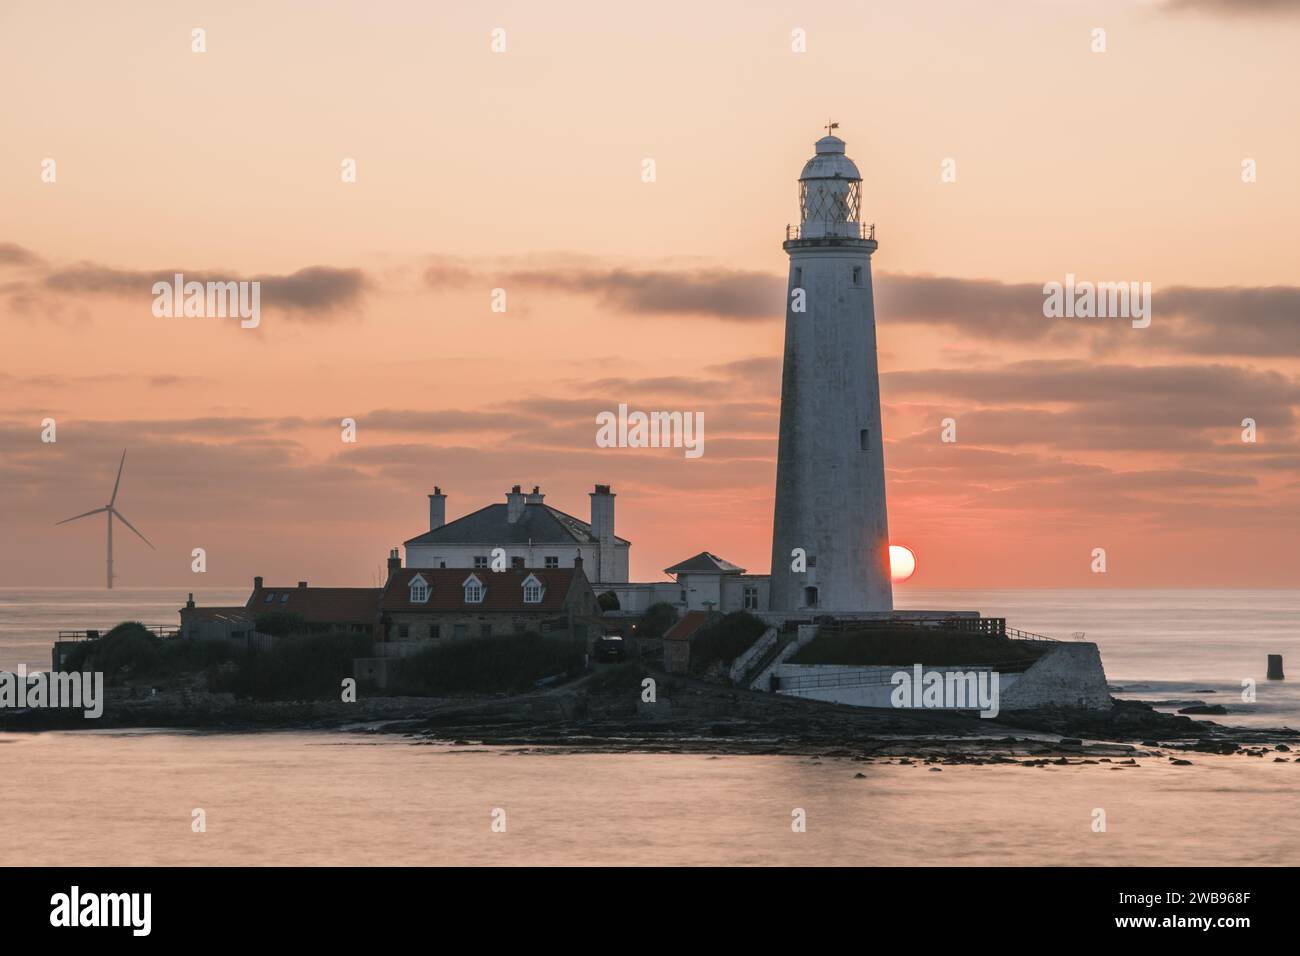 Le soleil se lève derrière le phare de St Mary's à Whitely Bay par un magnifique matin d'été. Banque D'Images